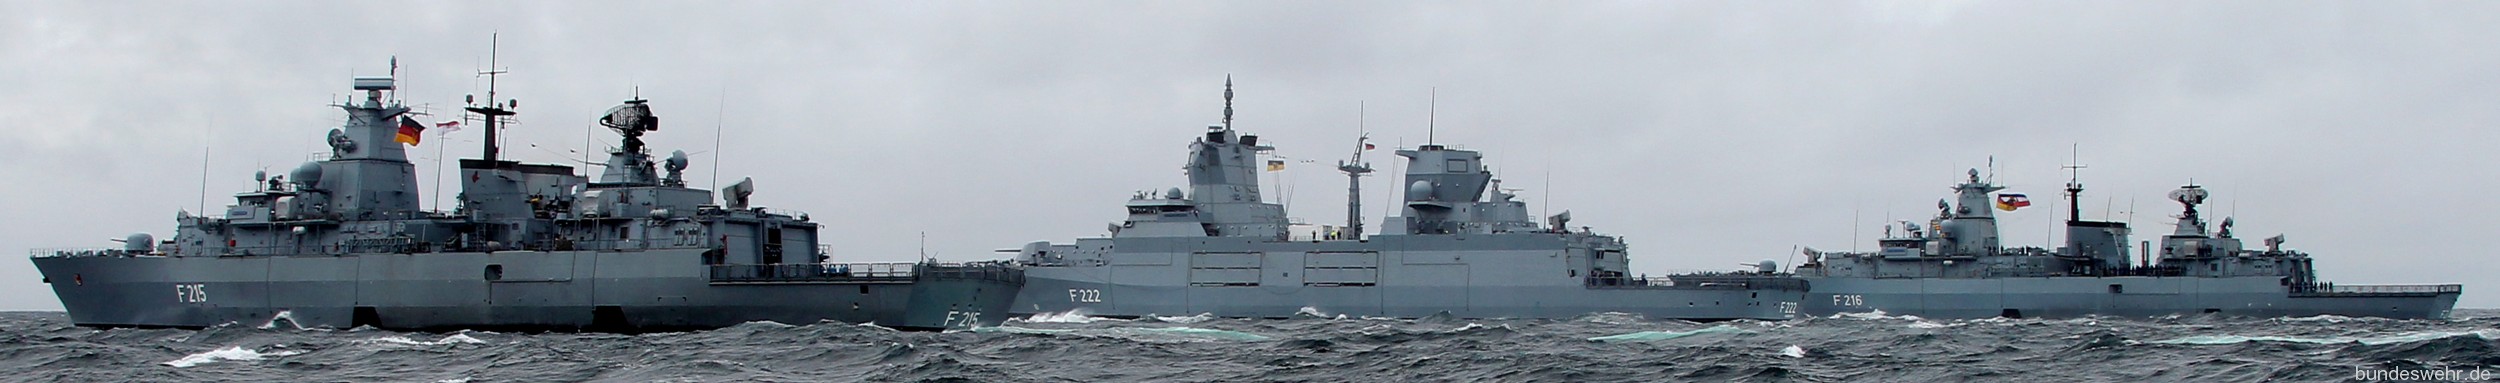 german navy deutsche marine seaforces online 05a